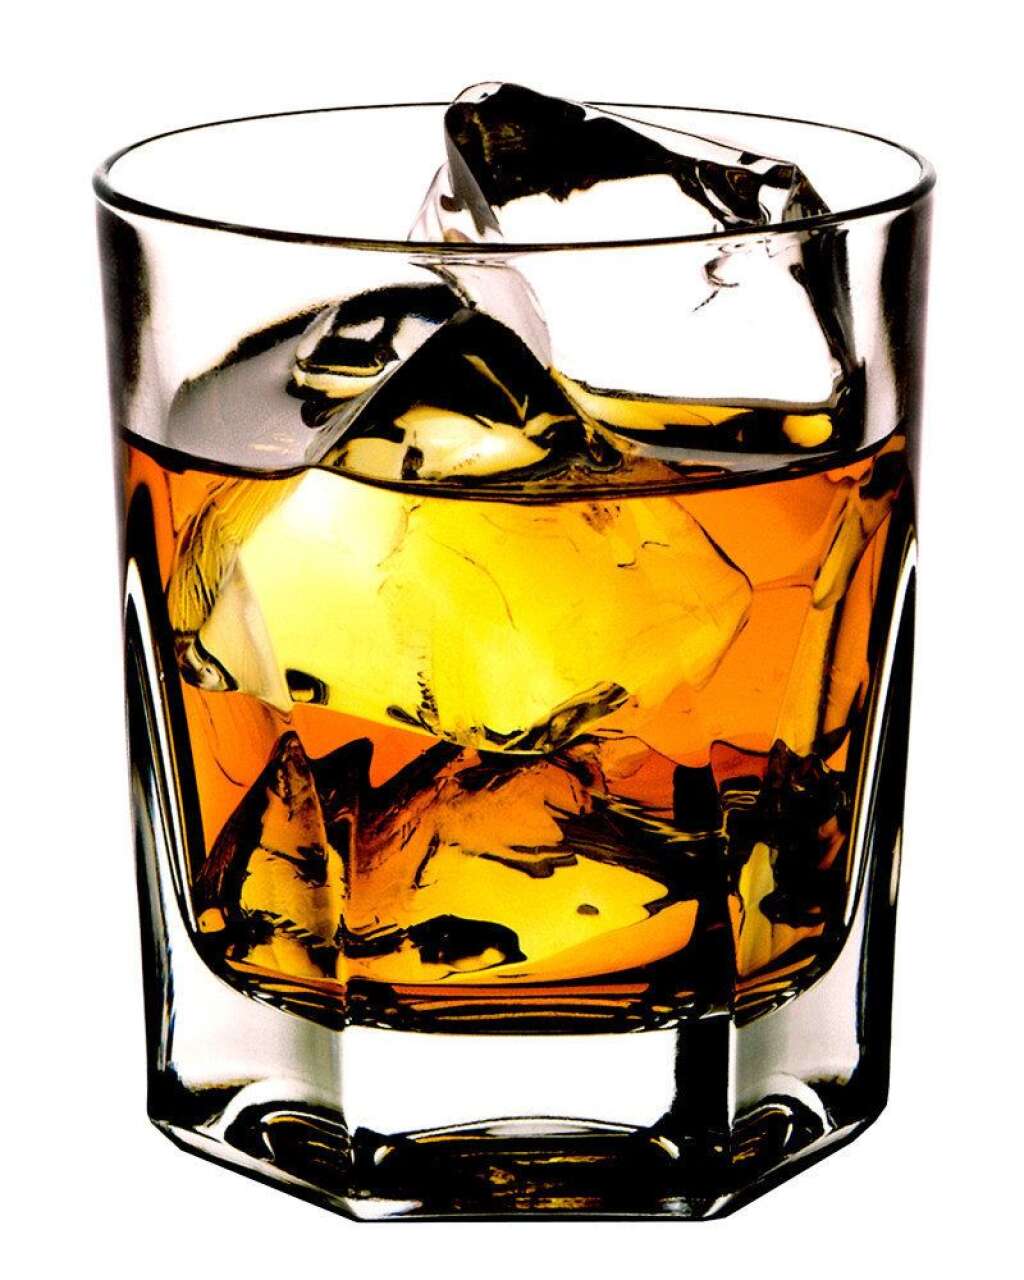 1. Scotch: 55 calories - Les alcools secs, sans ajouts d'ingrédients tels que le sucre ou sans mélange, peuvent se révéler très légers en petite quantité. Ainsi, un verre de scotch ou de whisky de 25ml ne contient en moyenne que 55 calories.